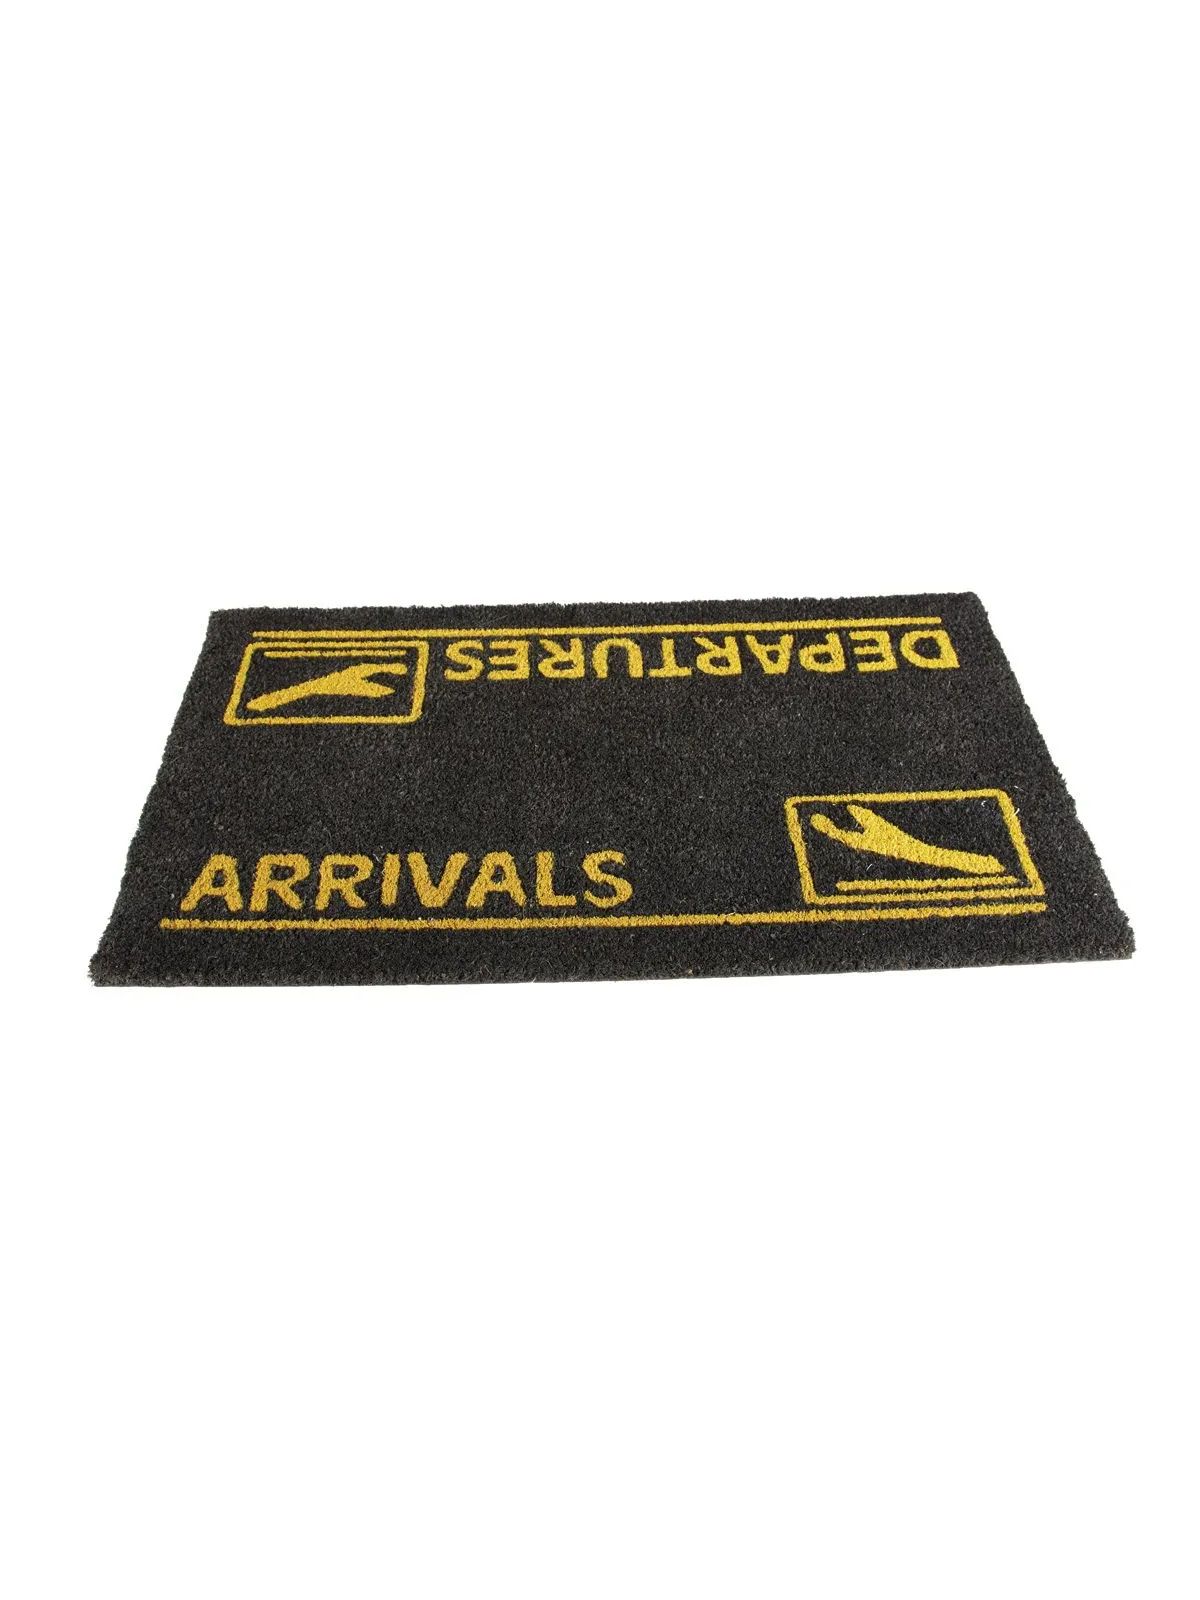 Arrivals and Departures Doormat - black-yellow, 18" x 30"